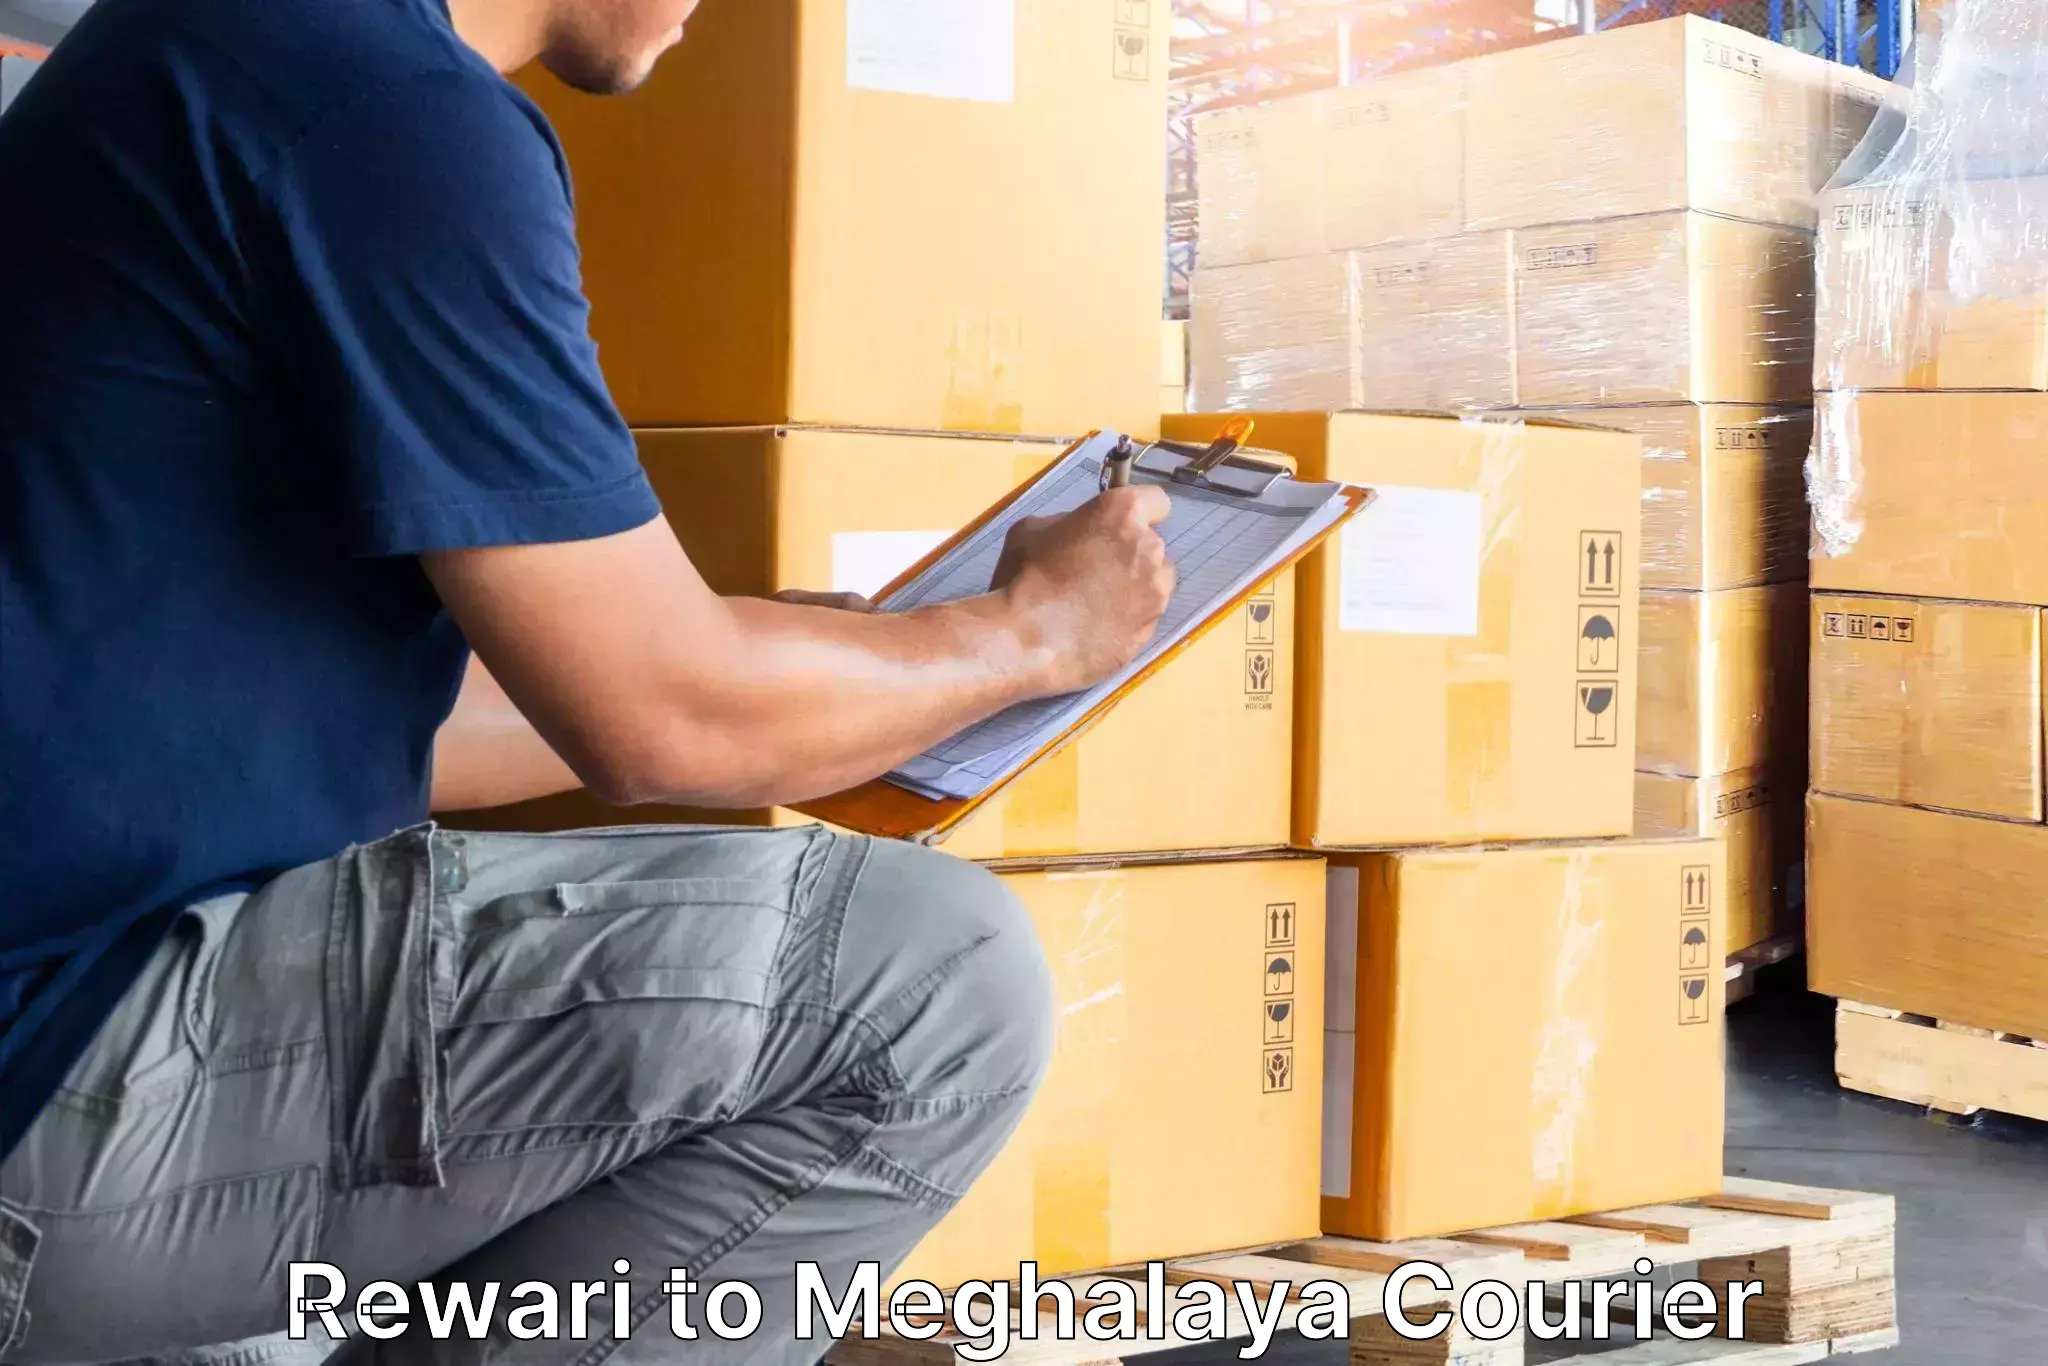 Furniture moving experts Rewari to Umsaw